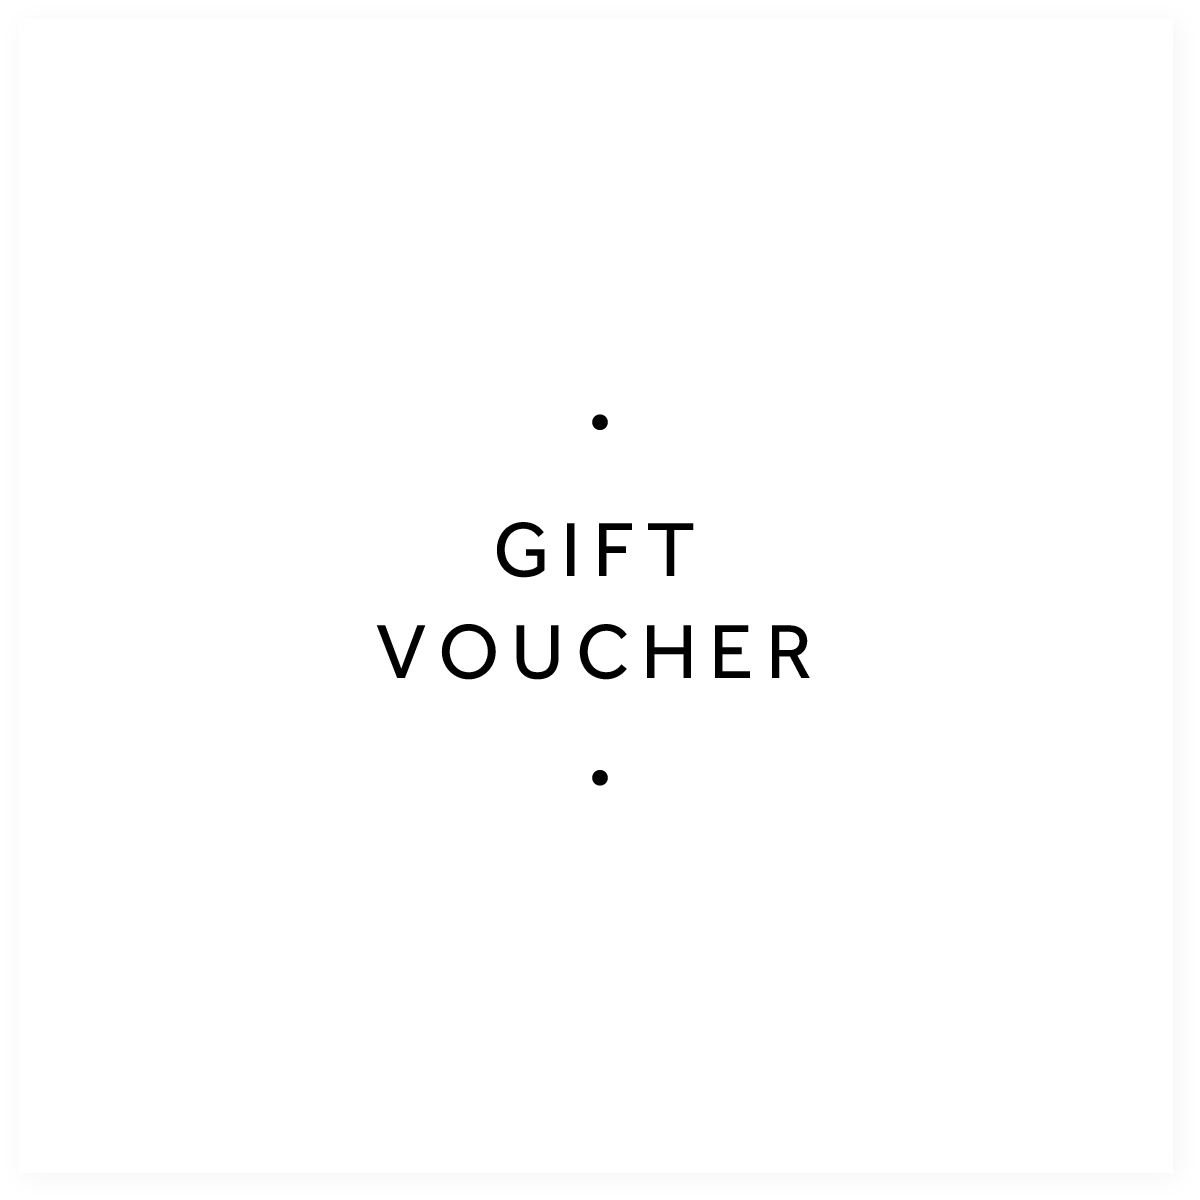 hopscotch gift voucher